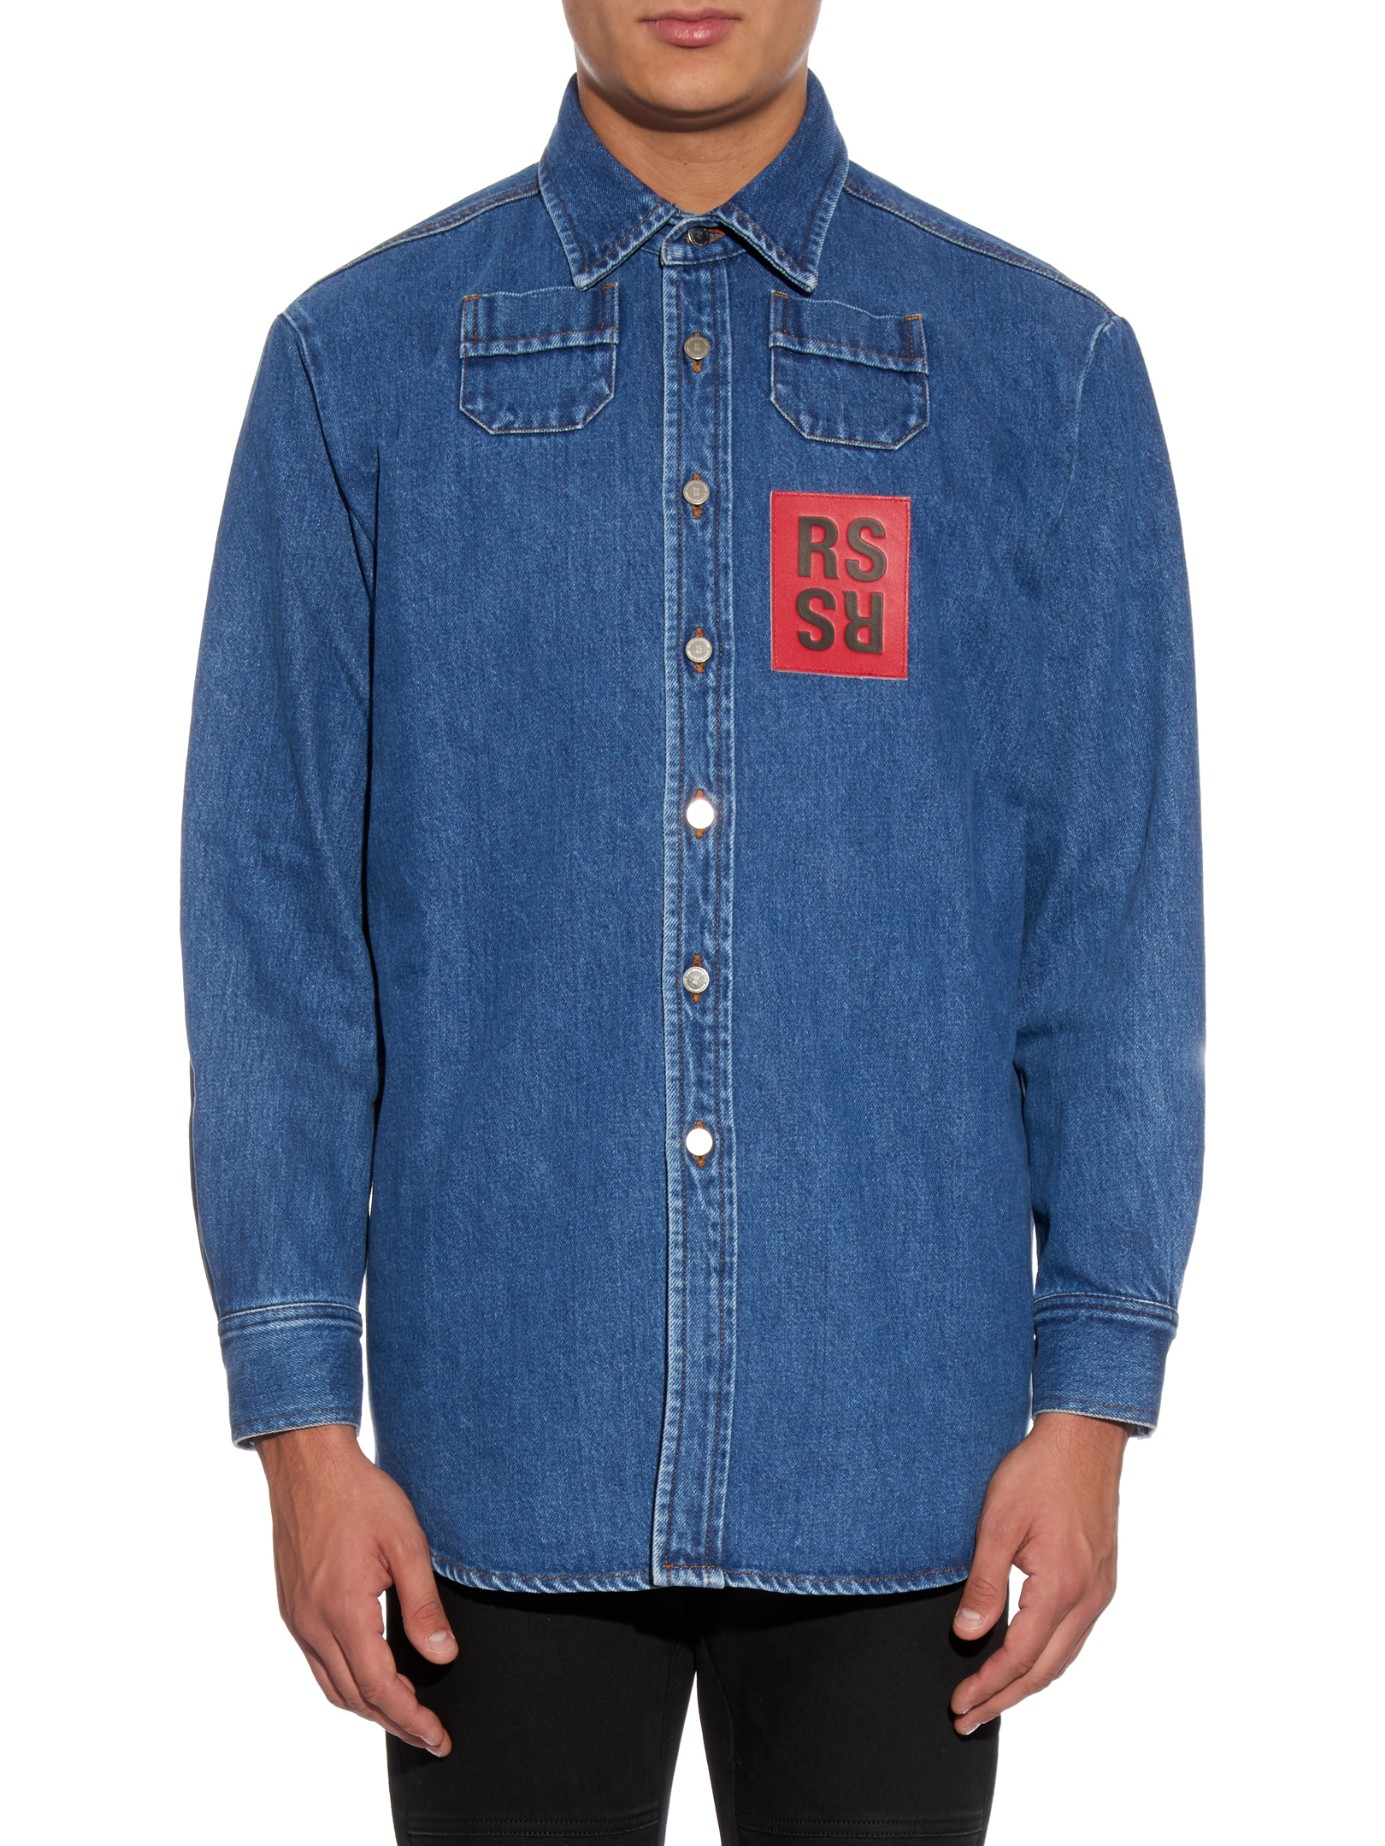 Raf Simons Oversized Denim Shirt in Blue for Men - Lyst